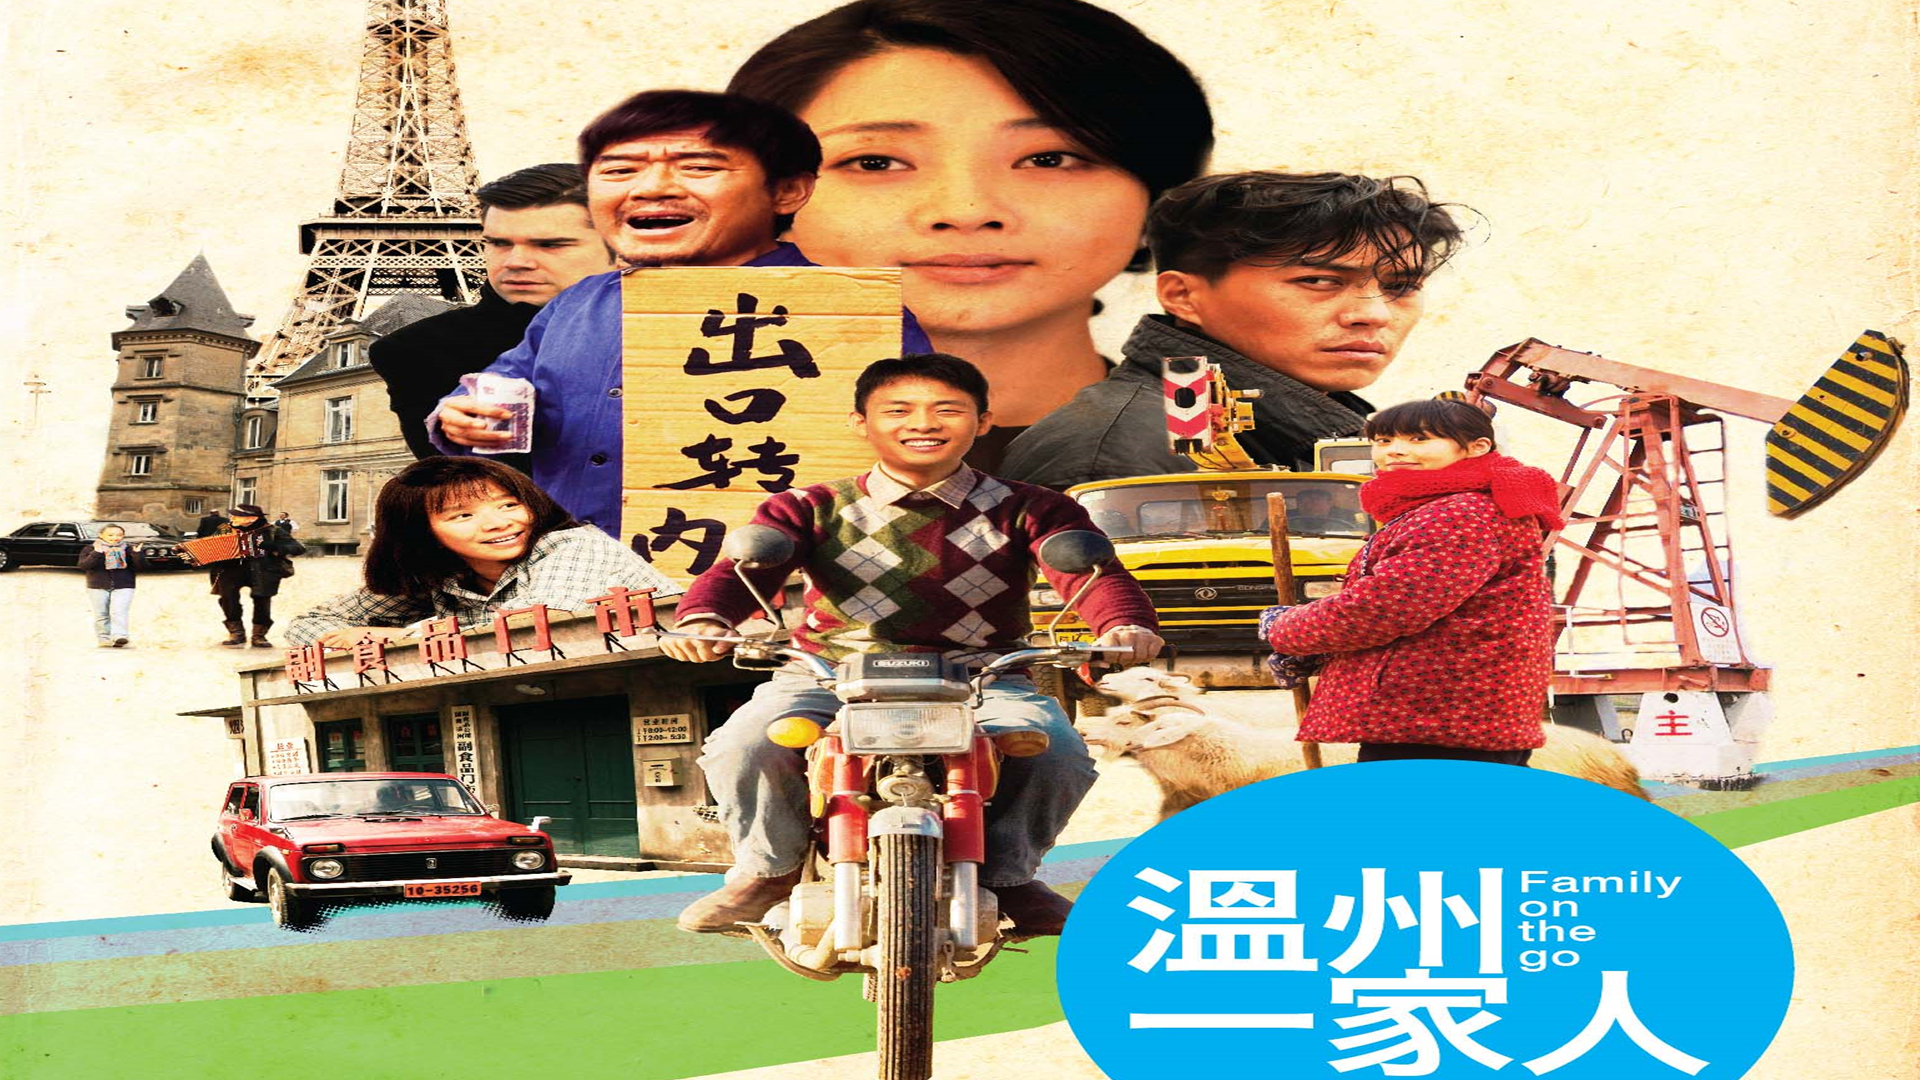 张译,等主演,孔笙导演的农村励志剧《温州一家人》上映,并荣获2013年